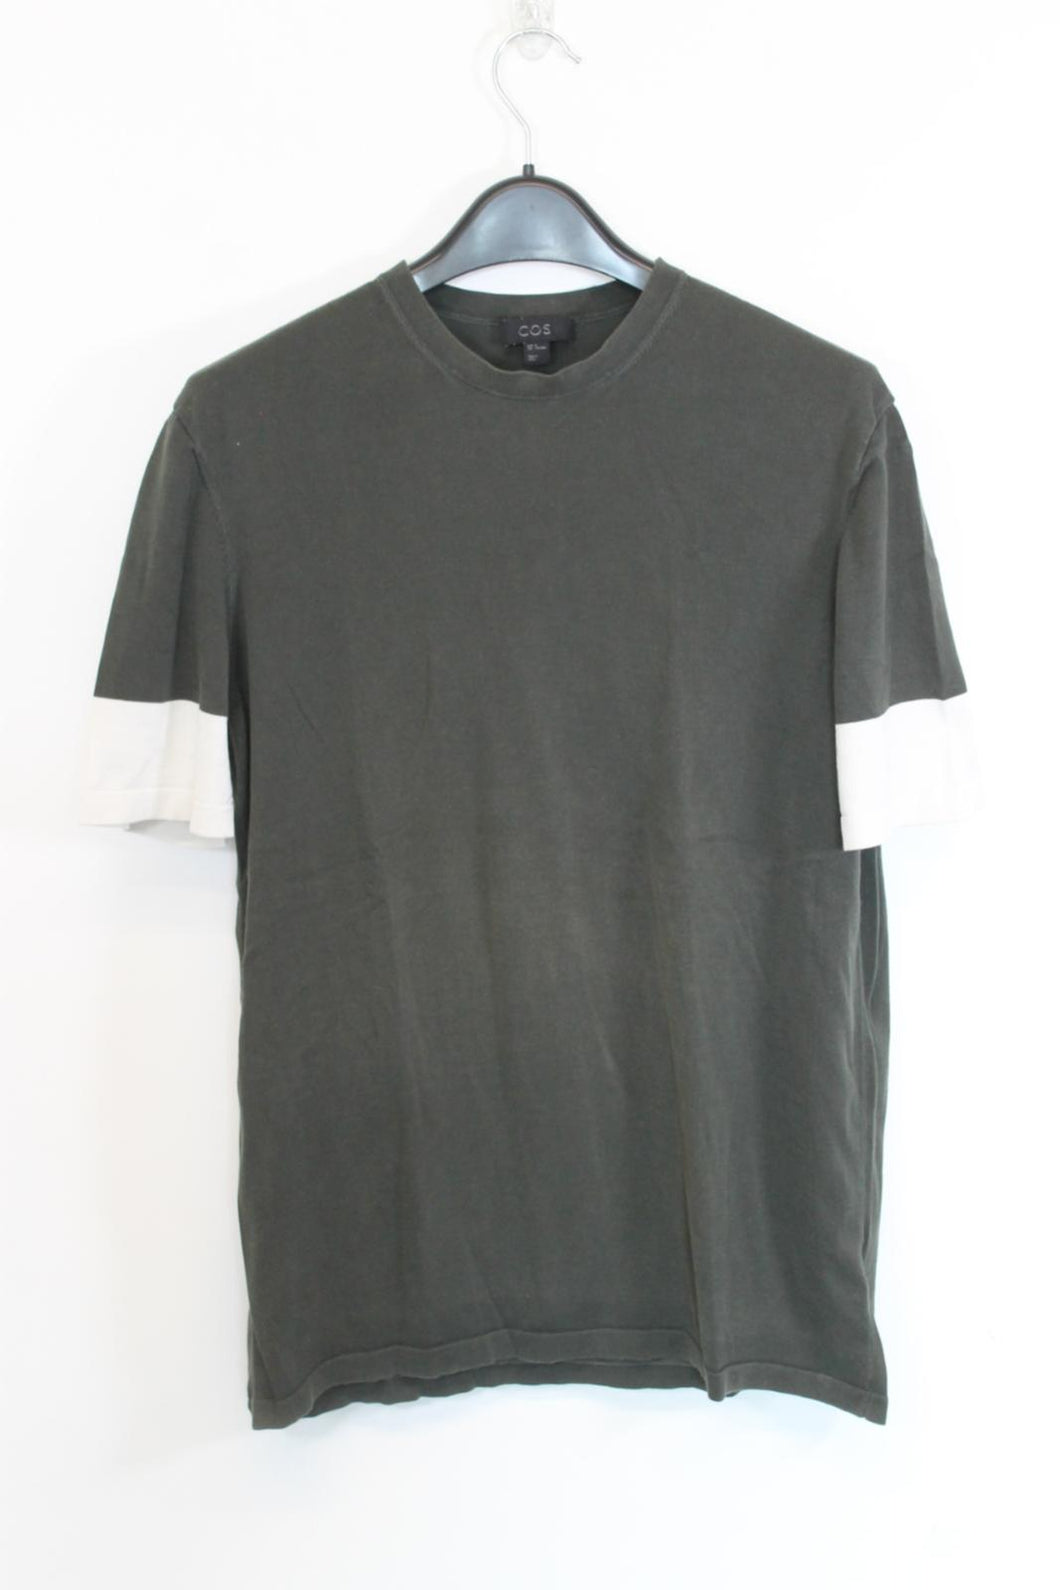 COS Men's Dark Green Short Sleeve Round Neck T-Shirt Top Size M